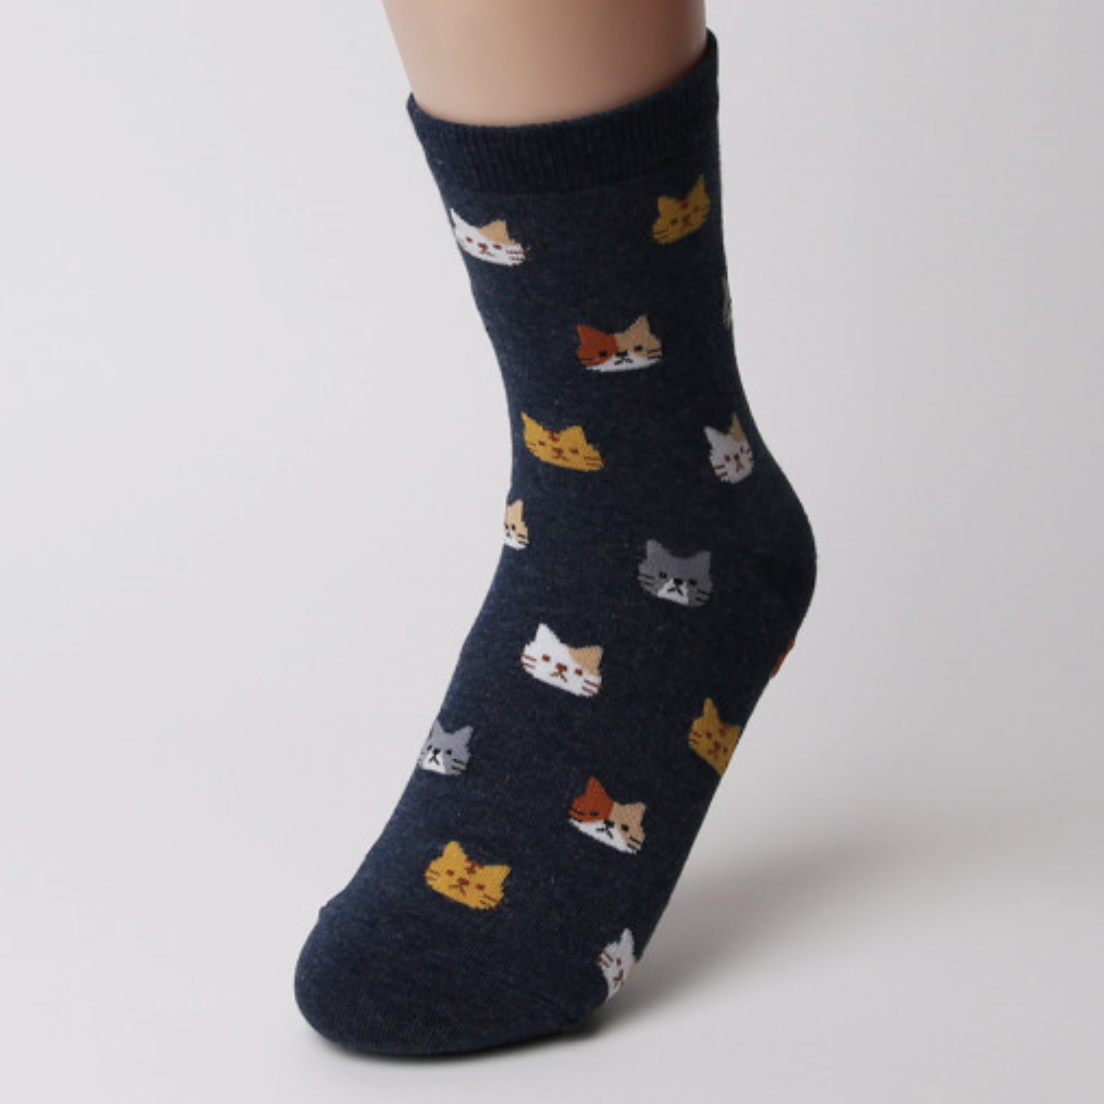 chaussettes hautes pour femme chat bleu marine - seoul station